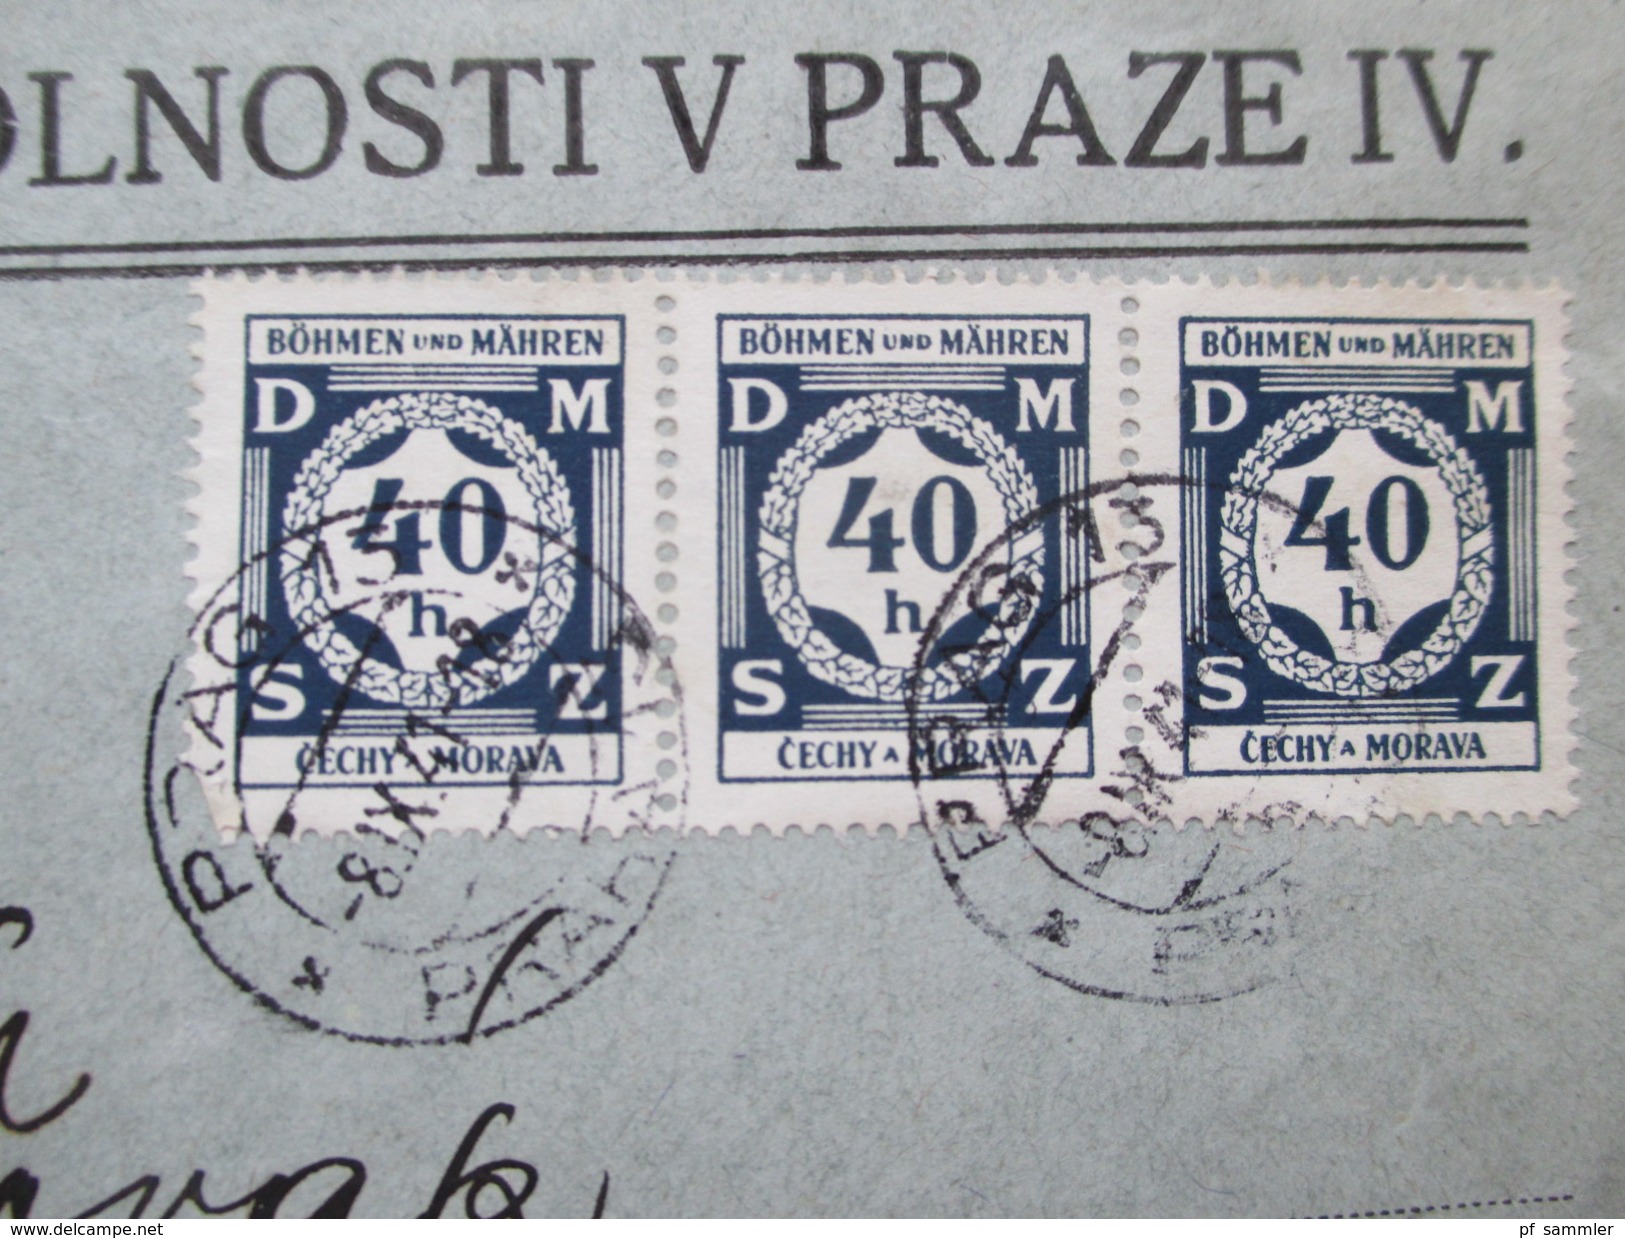 Deutsches Reich Böhmen Und Mähren 1941 Dienst Nr. 2 MeF Ministerstvo Spravedlnosti V Praze IV - Lettres & Documents